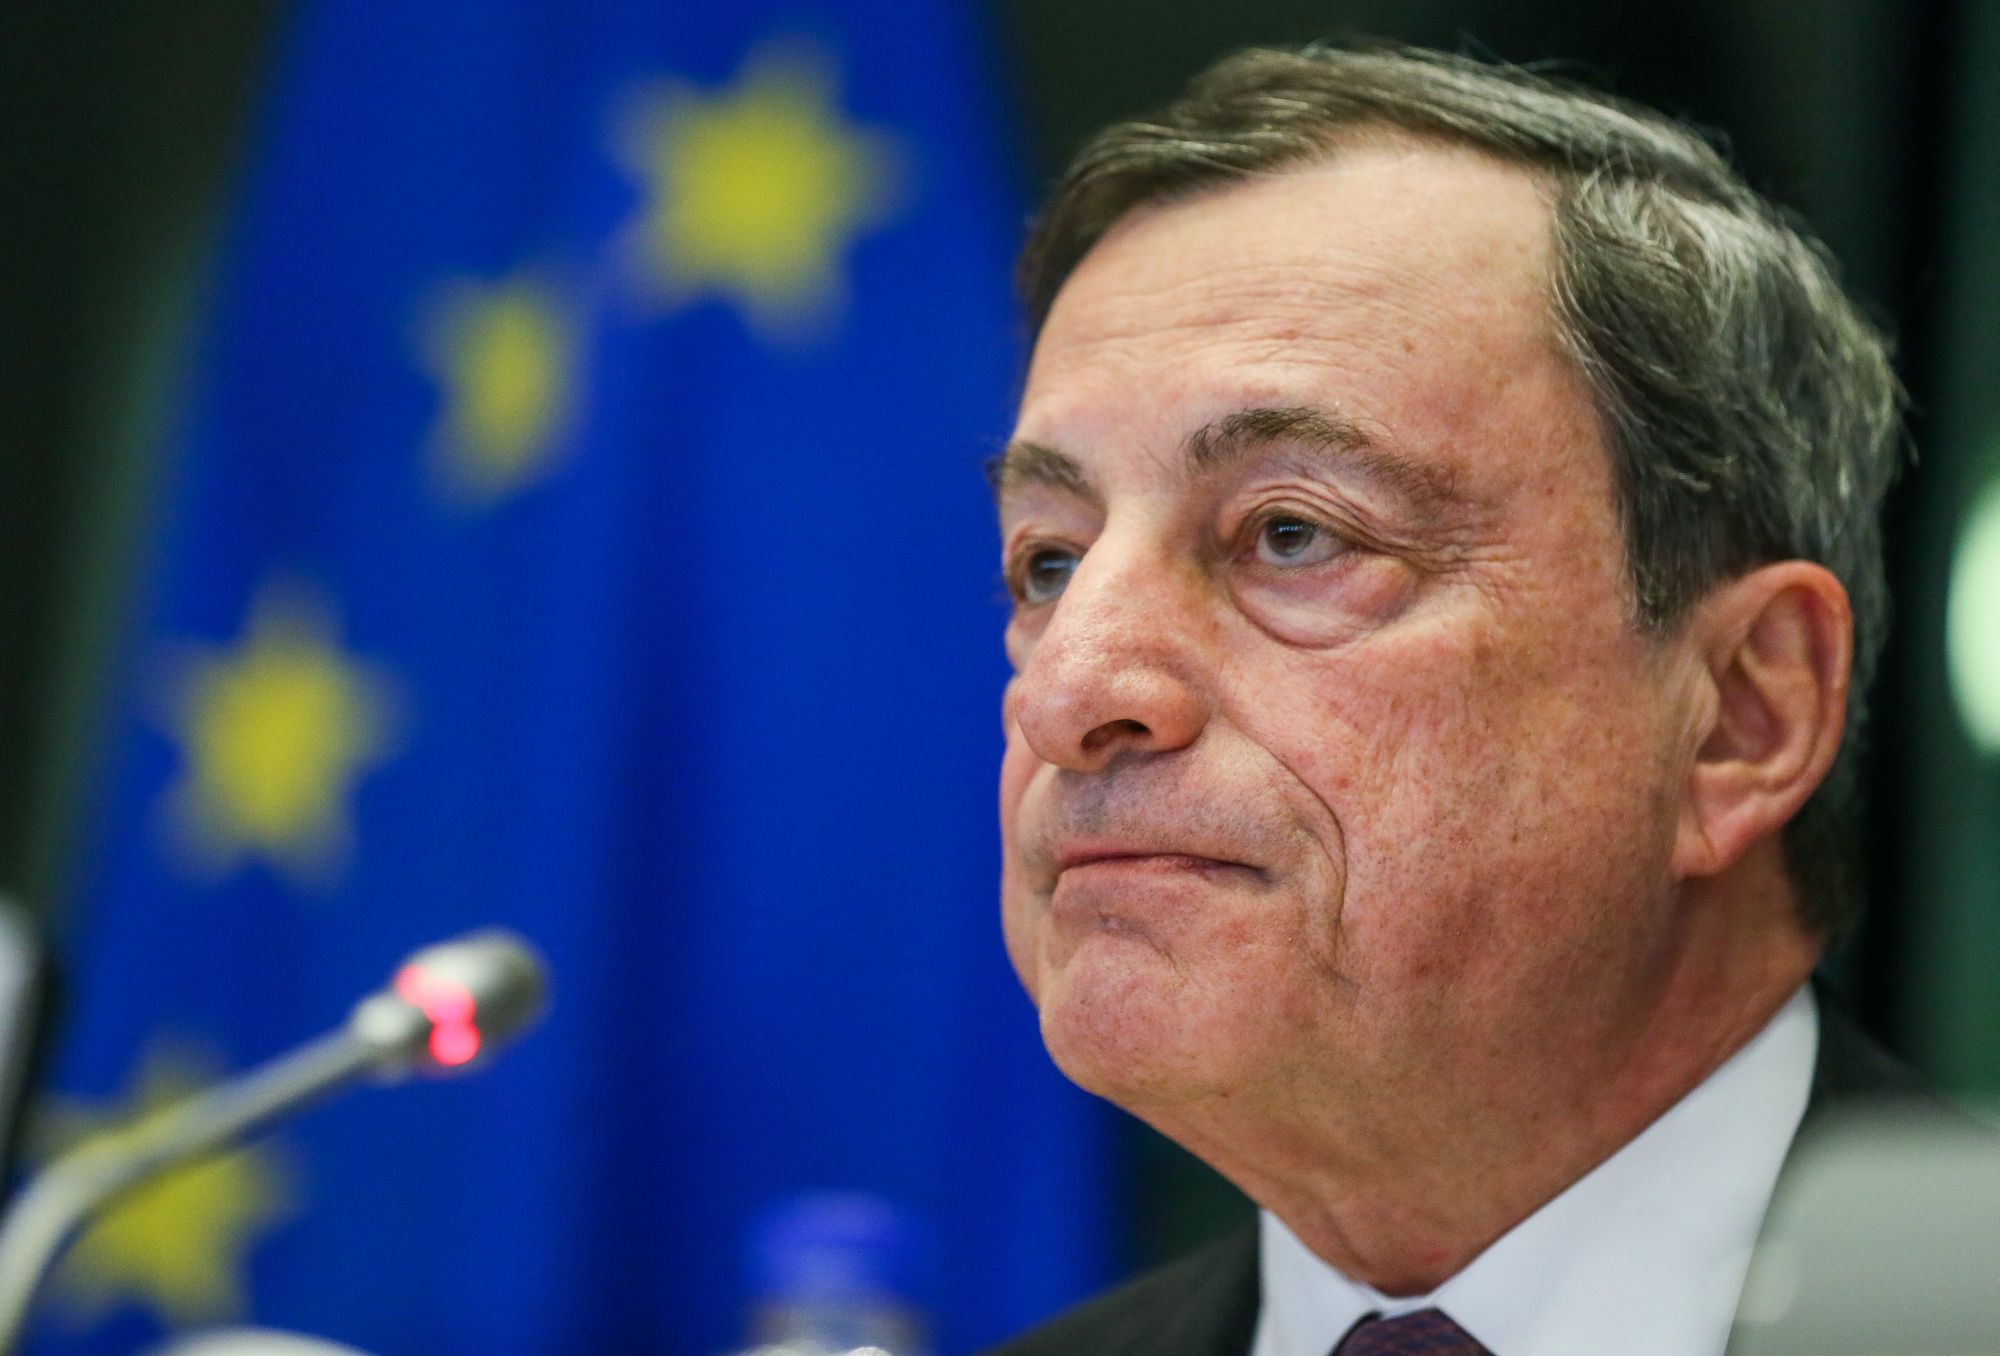 Mario Draghi, az Európai Központi Bank elnöke az Európai Parlament meghallgatásán Brüsszelben, 2018. február 26-án.  EPA/STEPHANIE LECOCQ